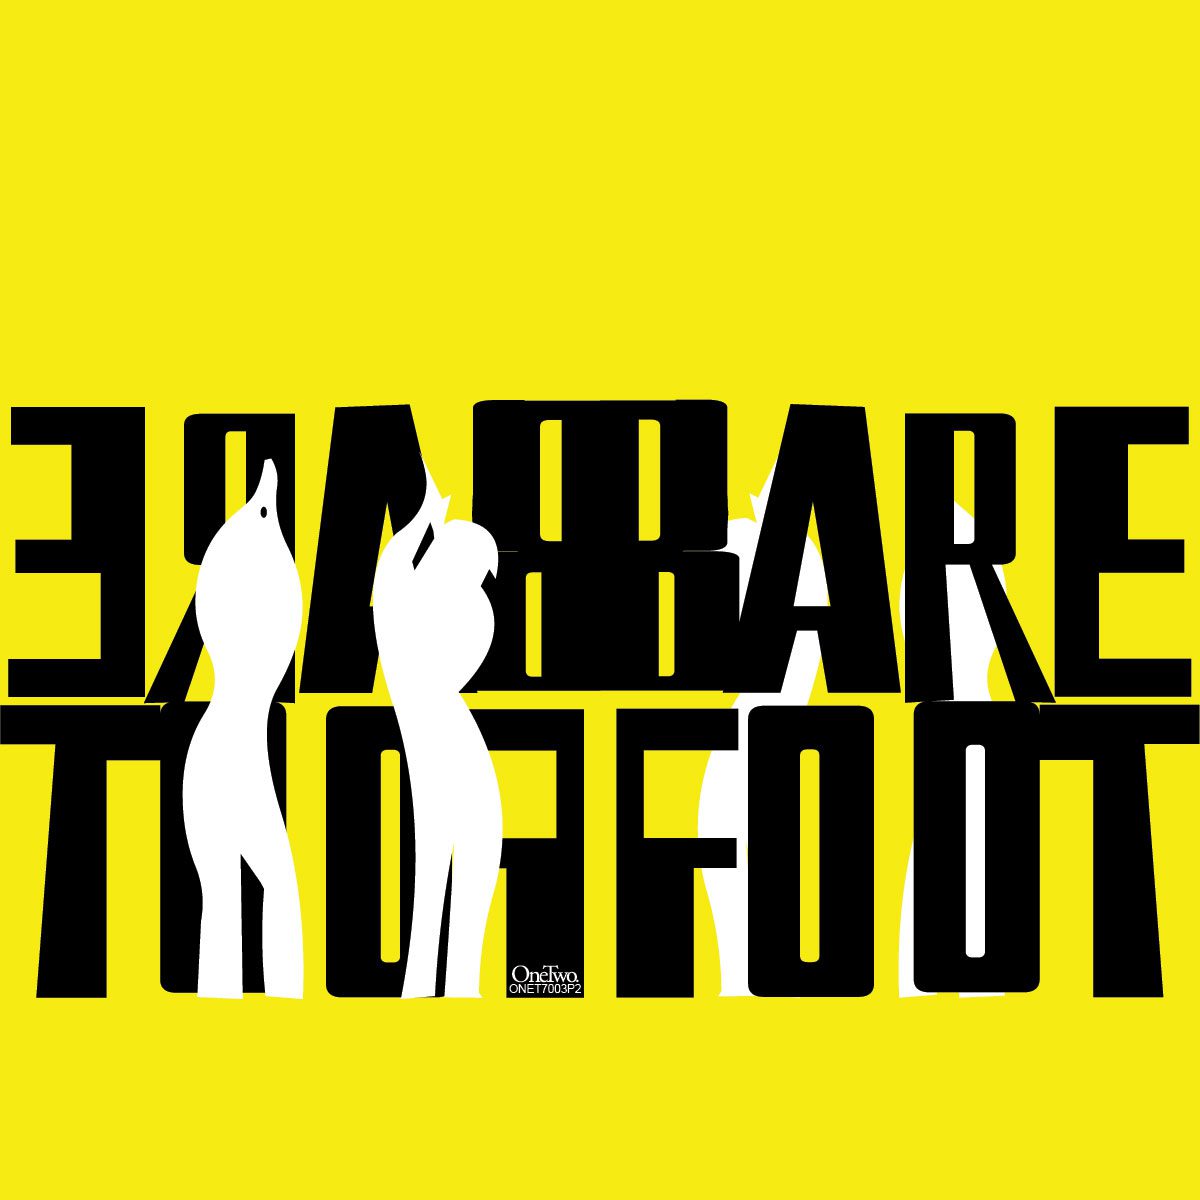 Barefoot CD